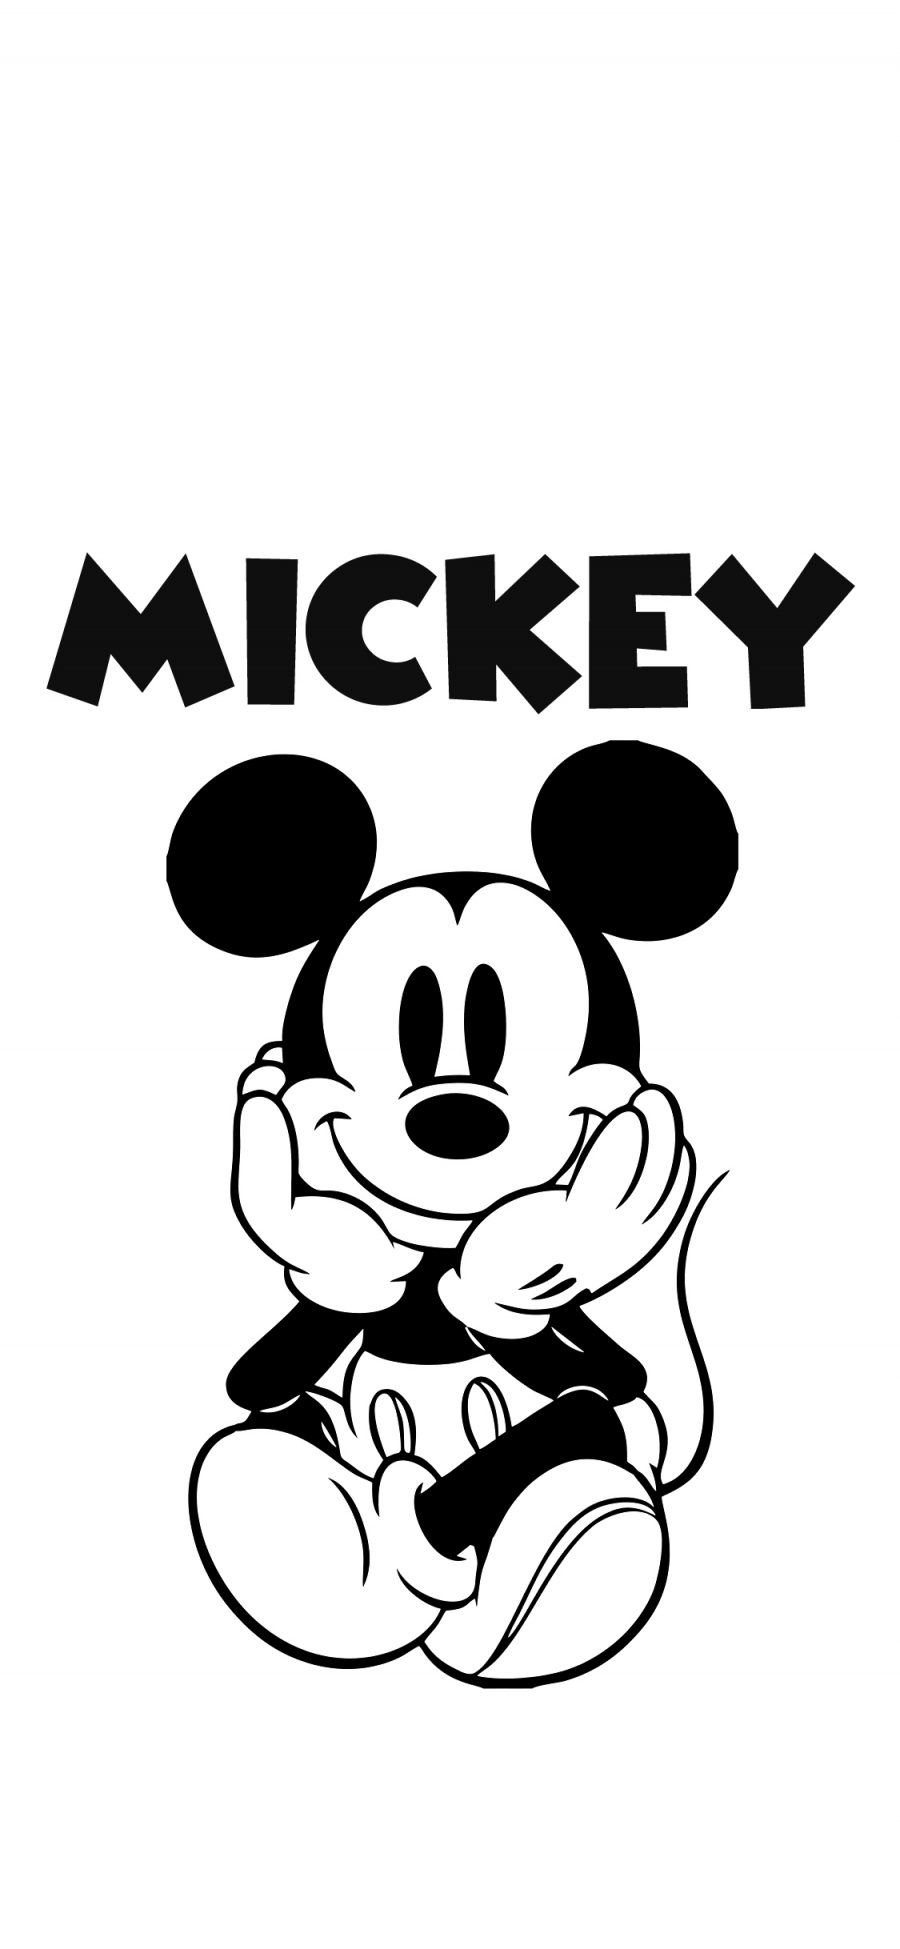 [2436×1125]黑白 米奇 Mickey 苹果手机动漫壁纸图片